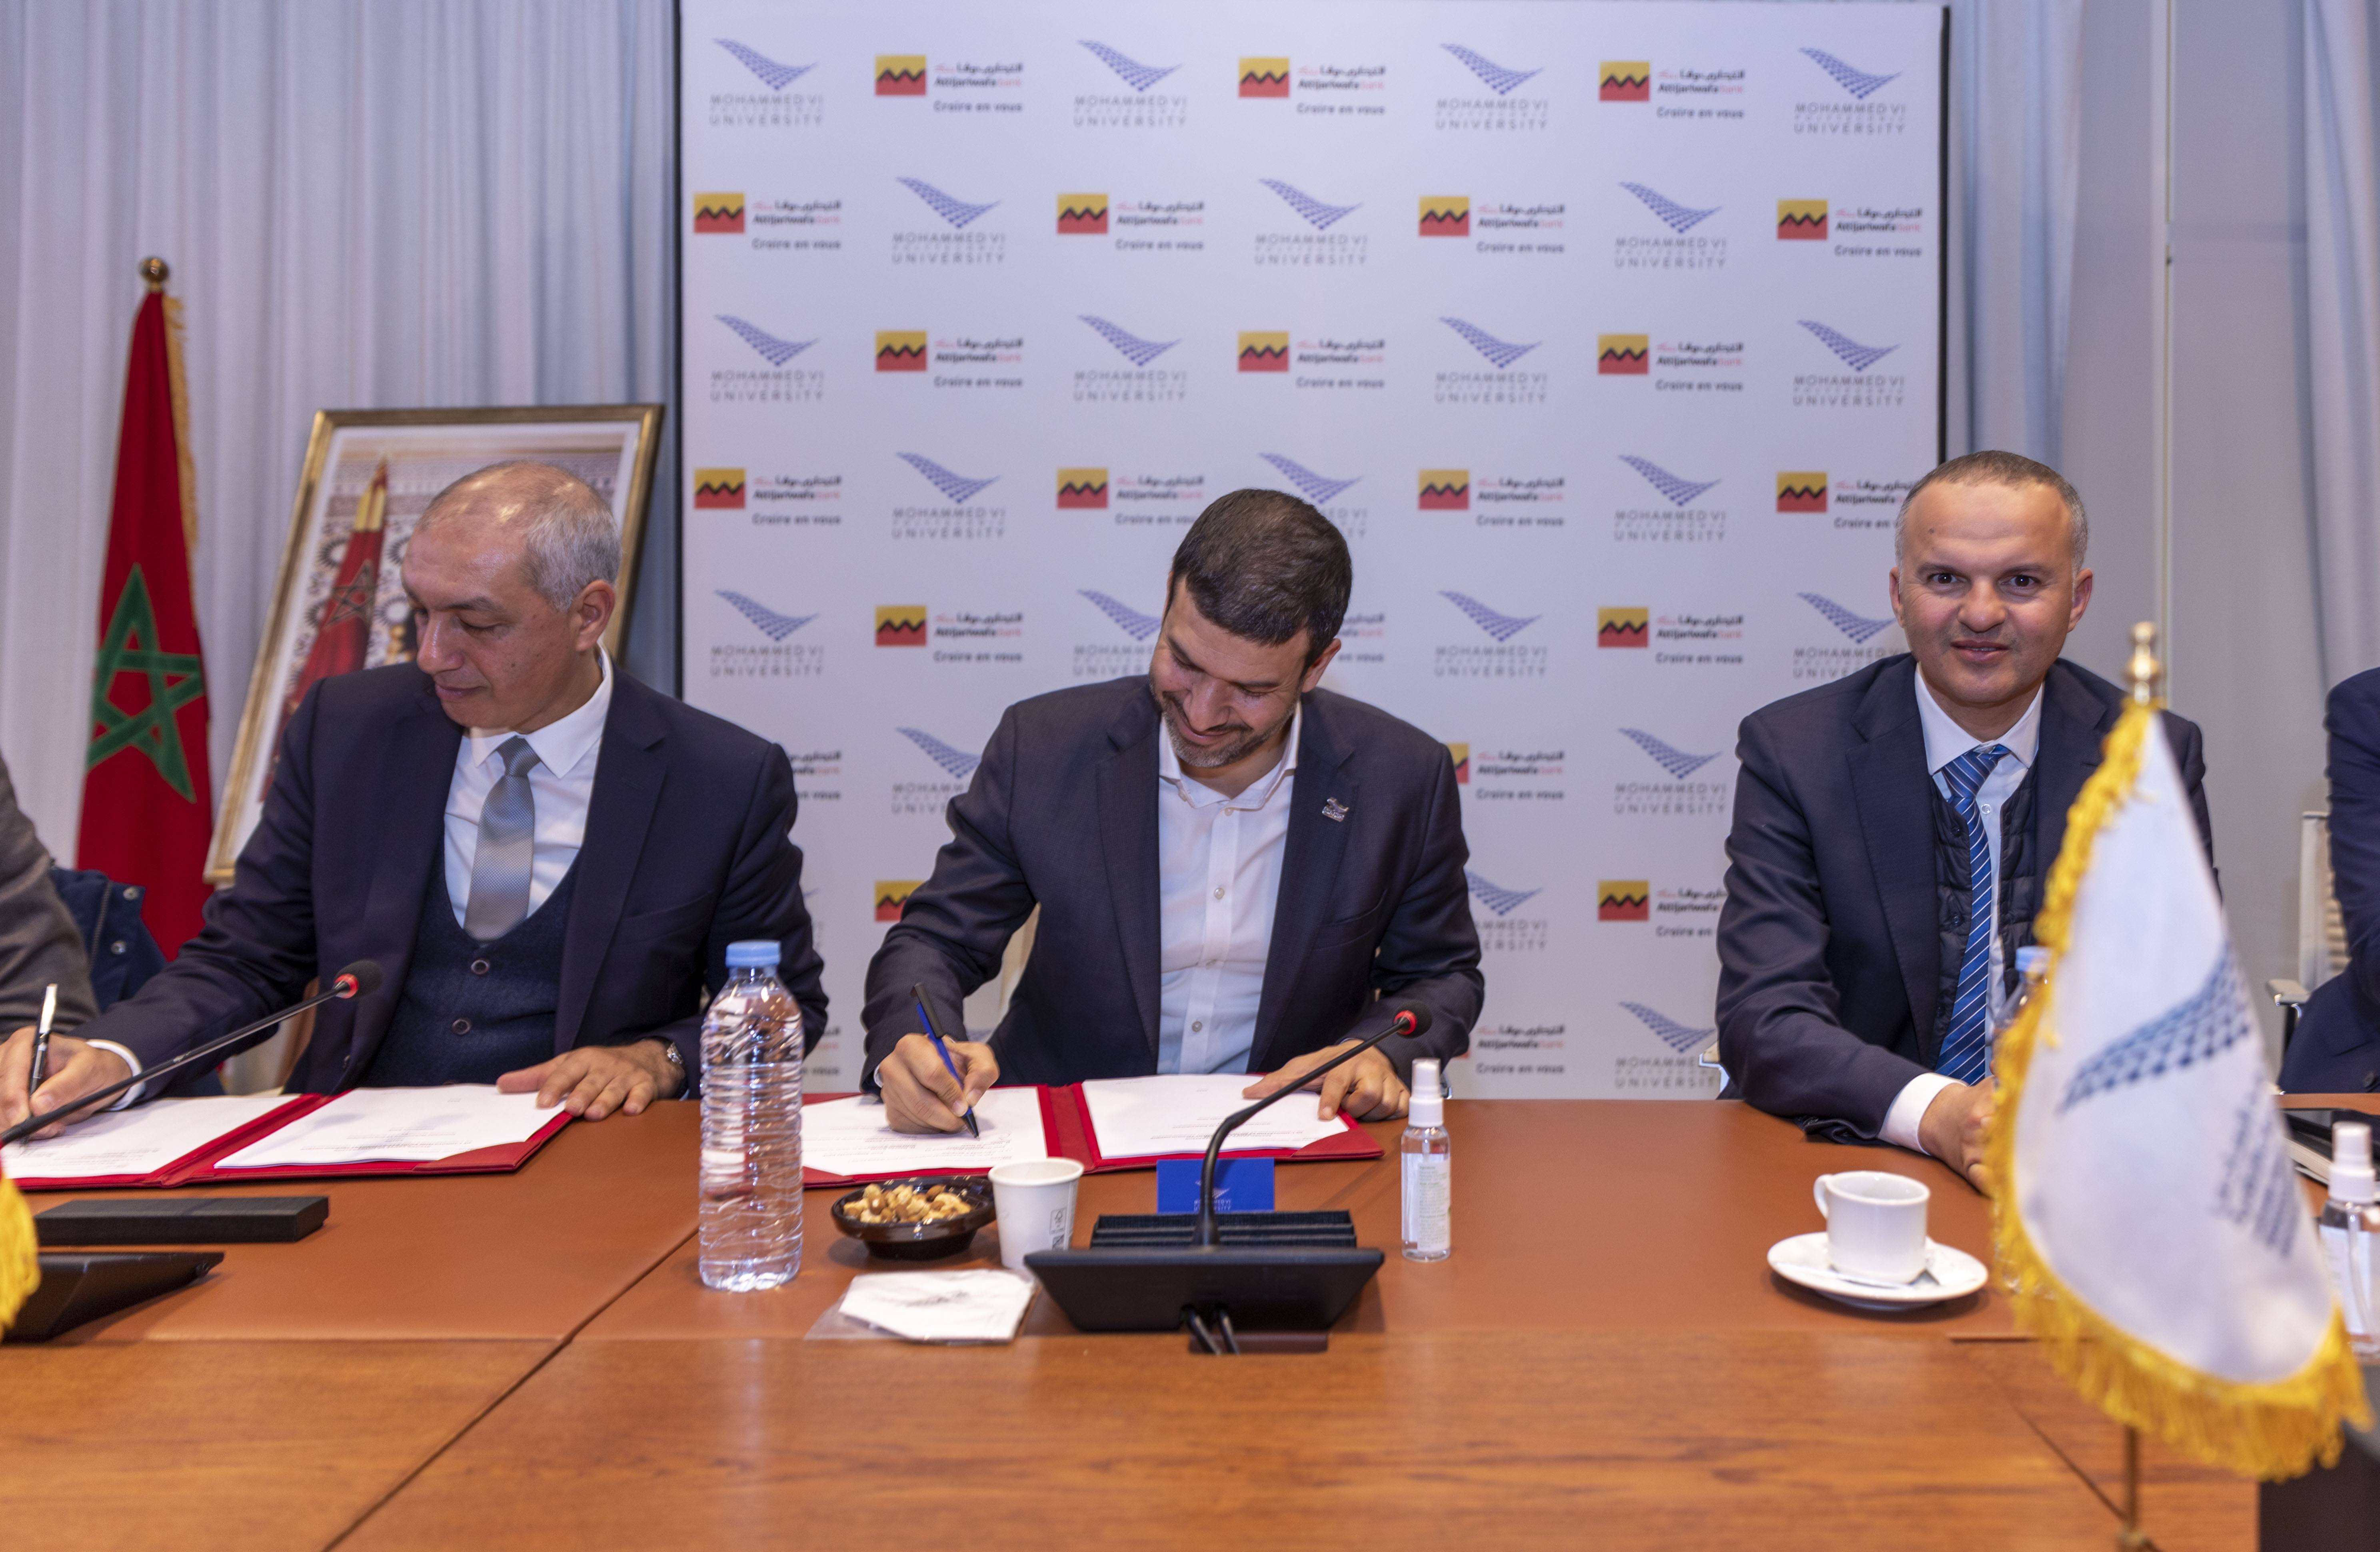 L’Université Mohammed VI Polytechnique et le groupe Attijariwafa bank signent un partenariat en matière d’innovation et de développement technologique.